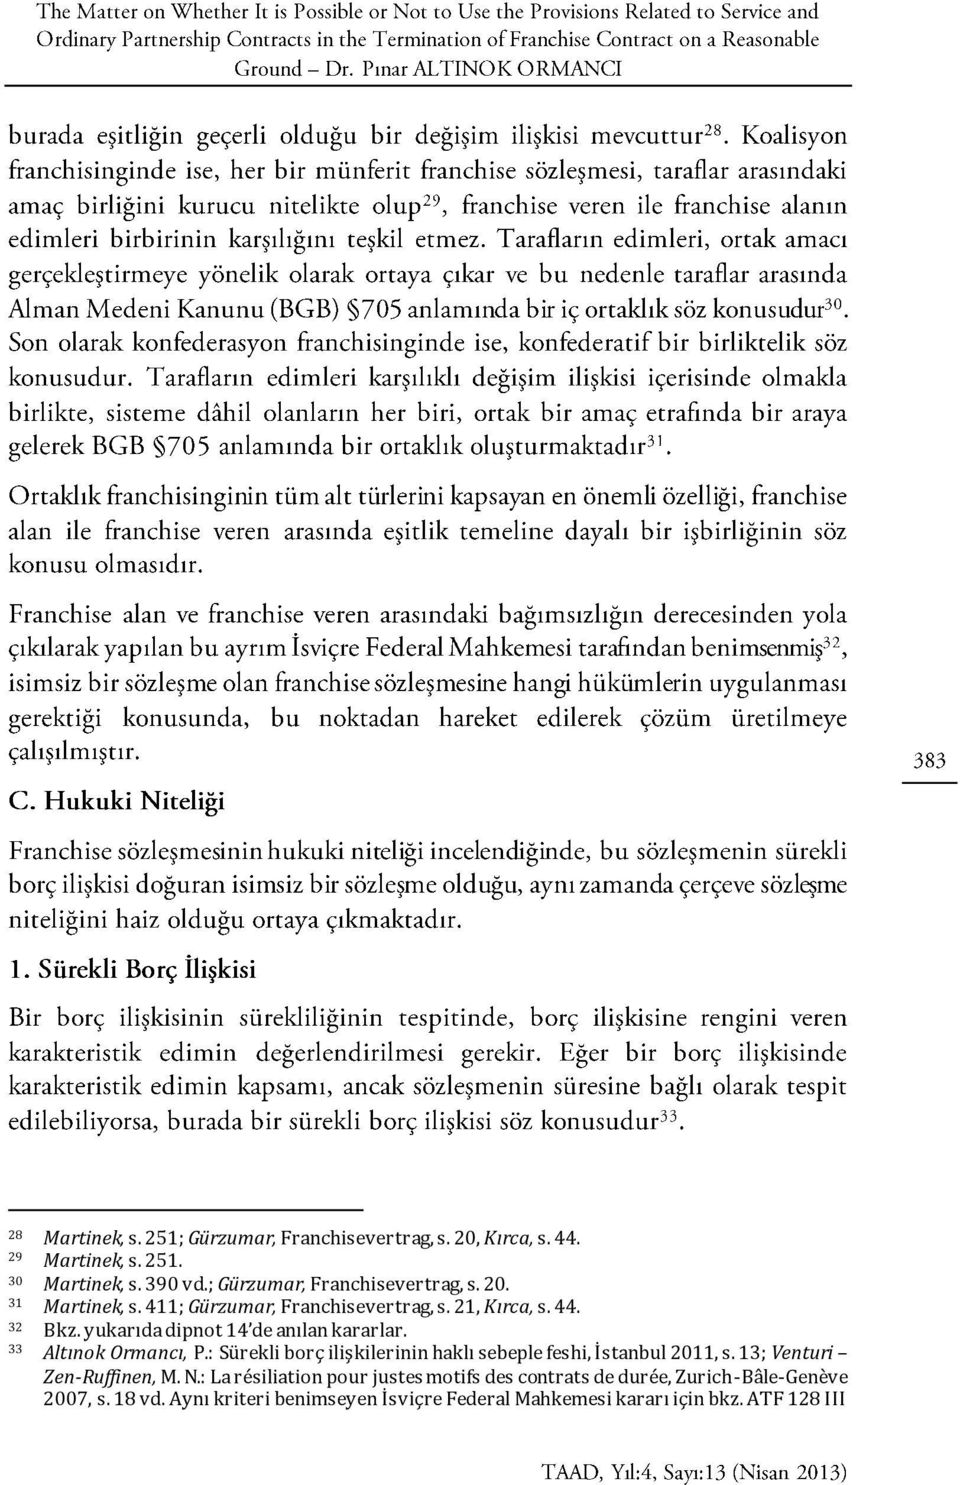 yukarıda dipnot 14 de anılan kararlar. 33 Altınok Ormancı, P.: Sürekli borç ilişkilerinin haklı sebeple feshi, İstanbul 2011, s.